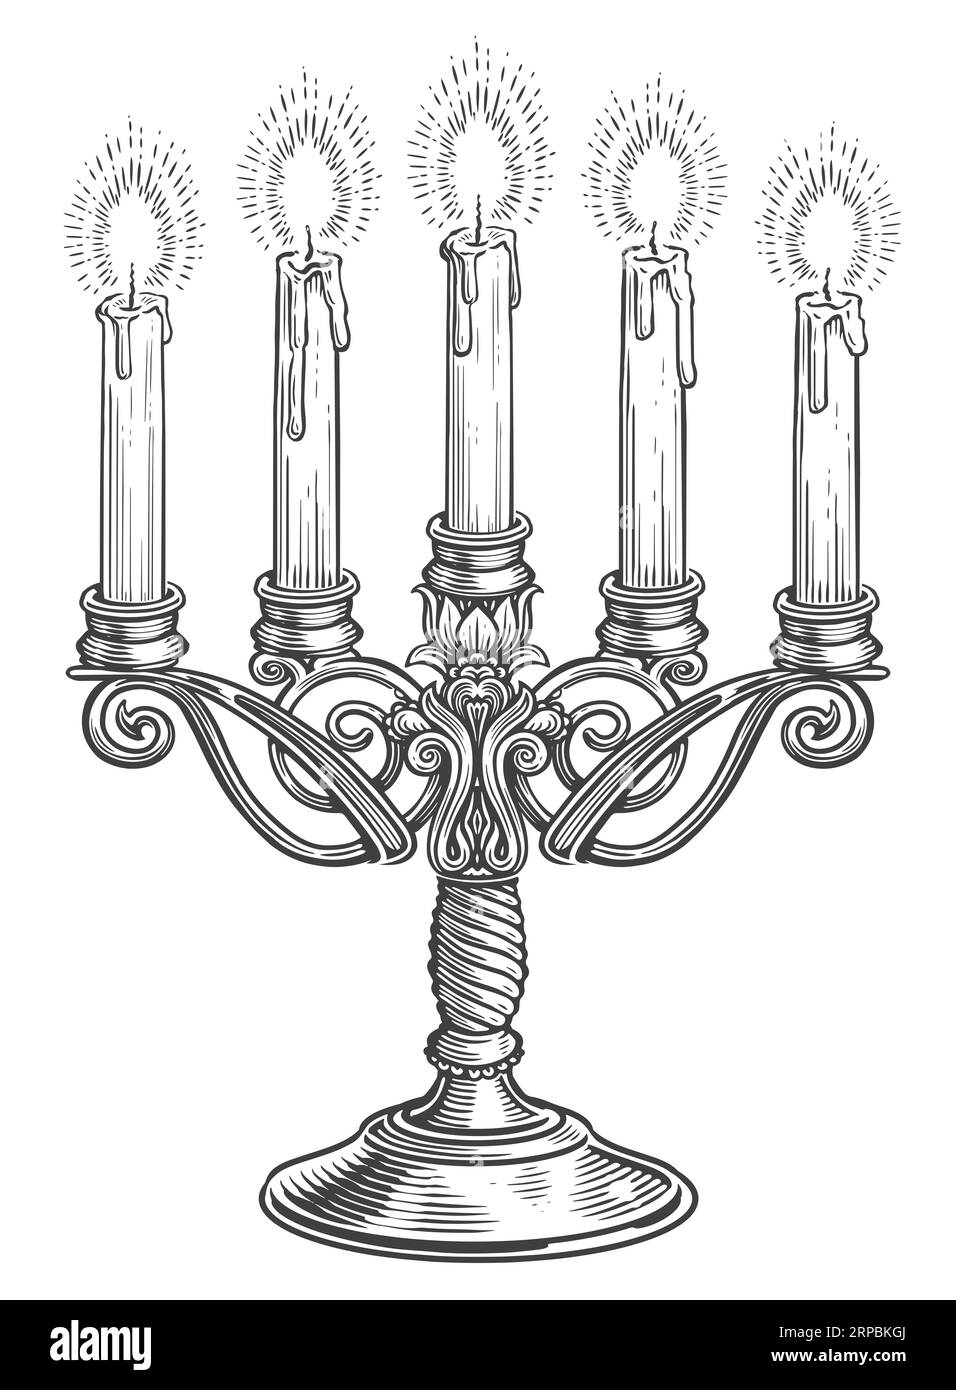 Candélabre vintage avec cinq bougies allumées dans le style de gravure. Illustration de dessin de chandelier dessiné à la main Banque D'Images